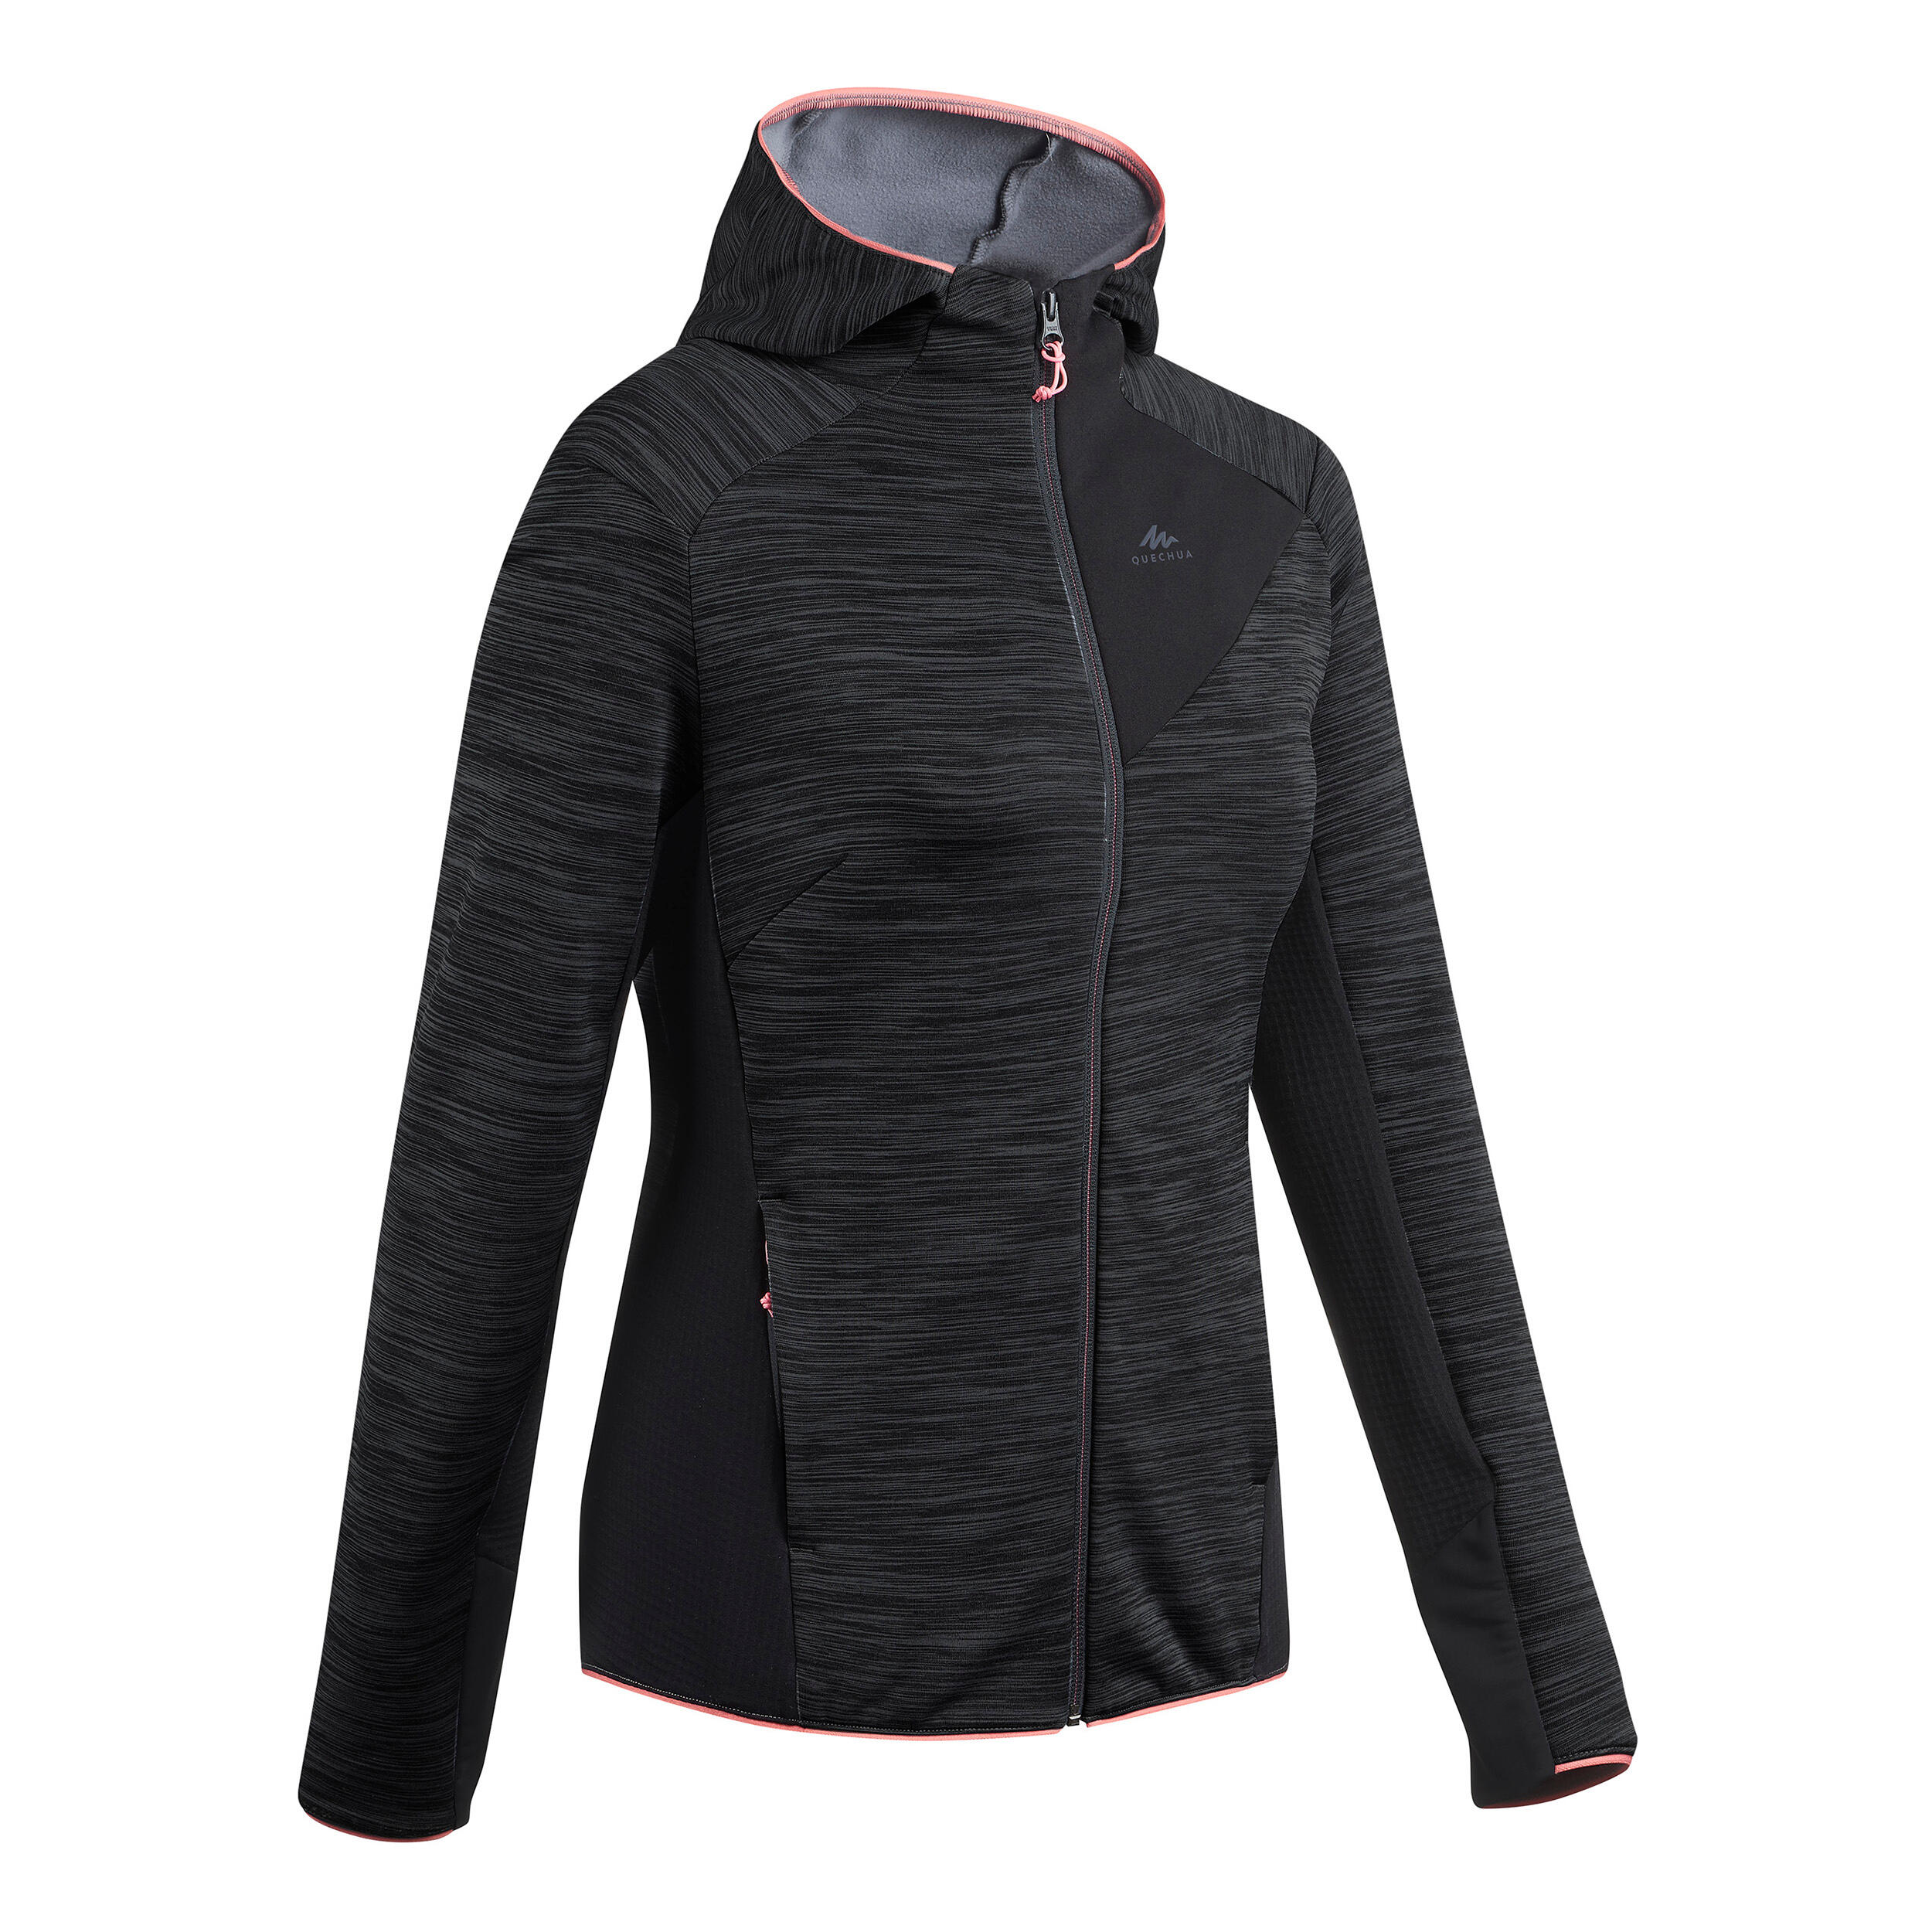 Manteau de randonnée en laine polaire femmes – MH 900 noir - QUECHUA